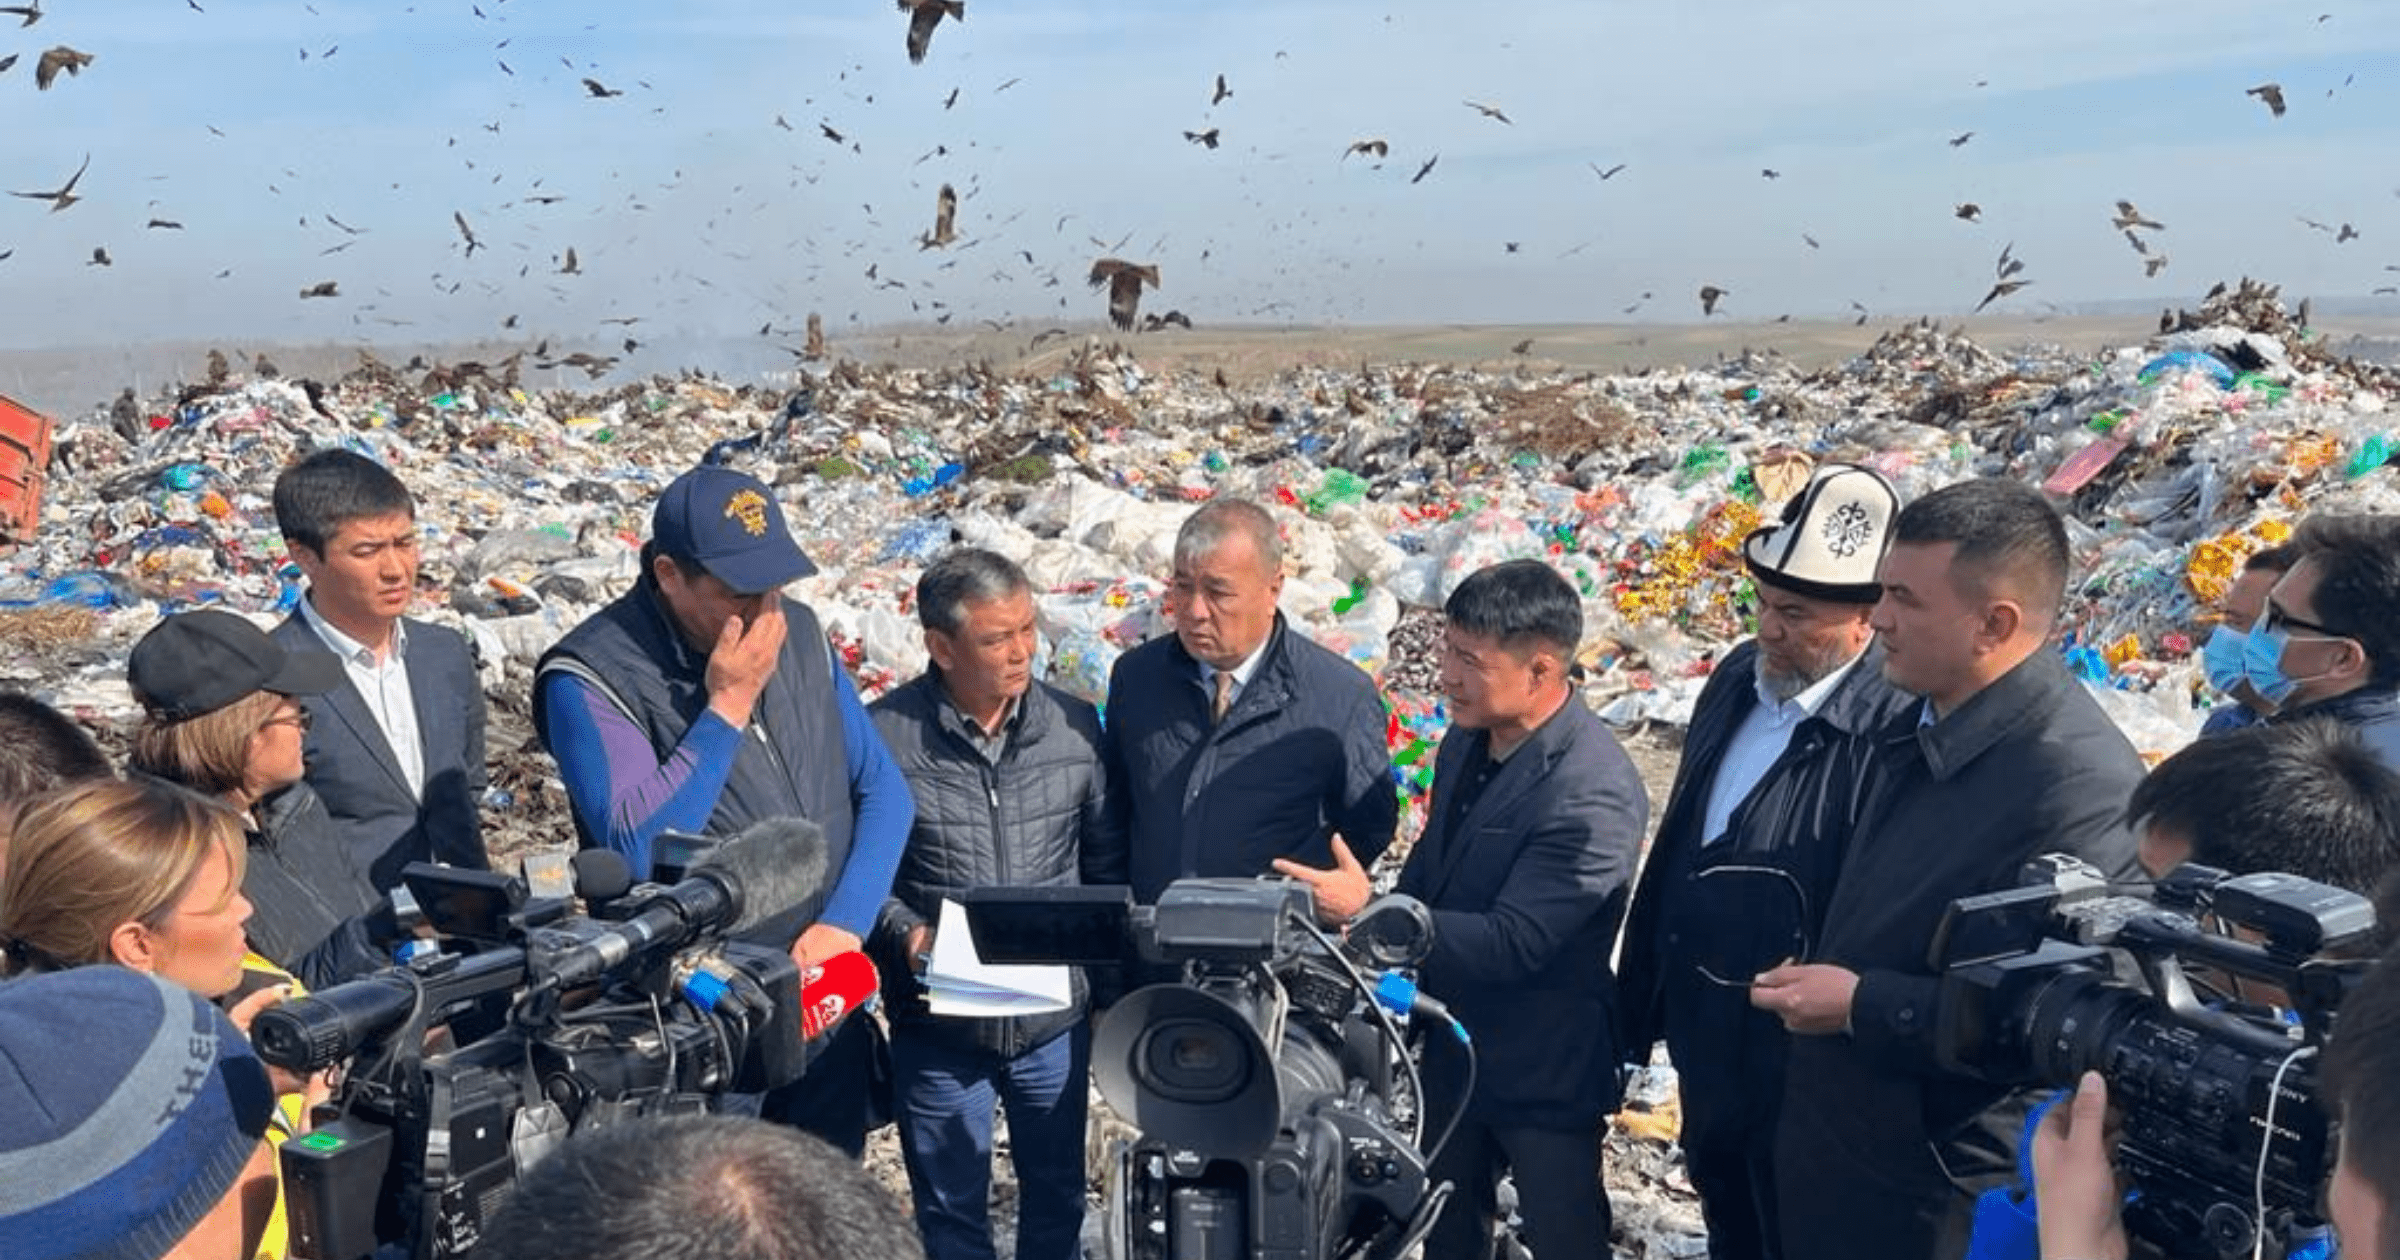 Депутаты создадут комиссию для расследования расходов кредита ЕБРР на мусорный полигон Бишкека